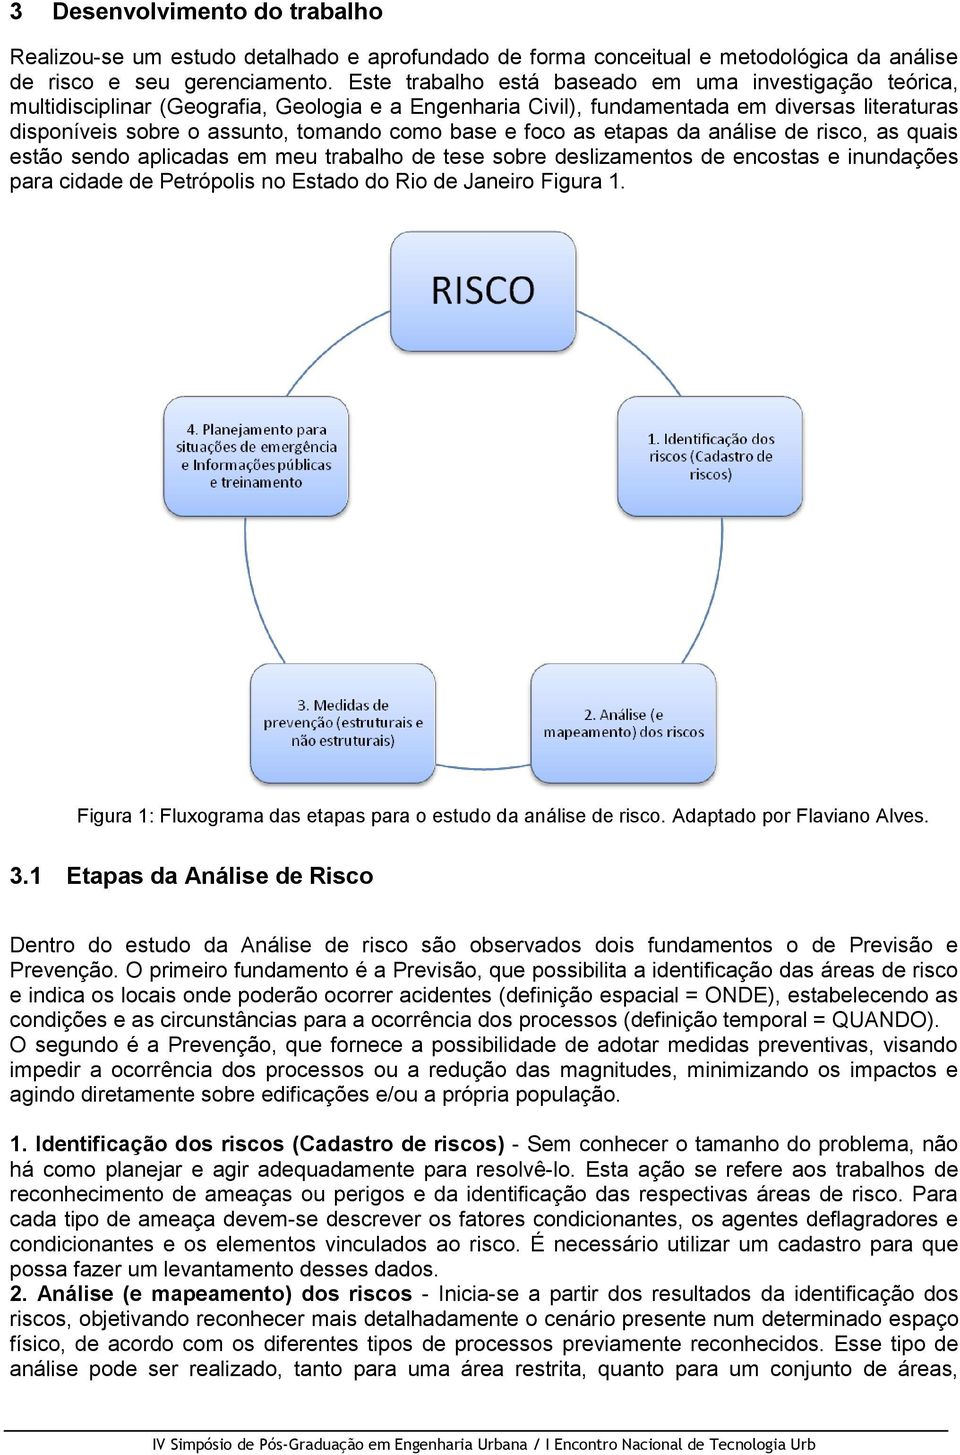 base e foco as etapas da análise de risco, as quais estão sendo aplicadas em meu trabalho de tese sobre deslizamentos de encostas e inundações para cidade de Petrópolis no Estado do Rio de Janeiro